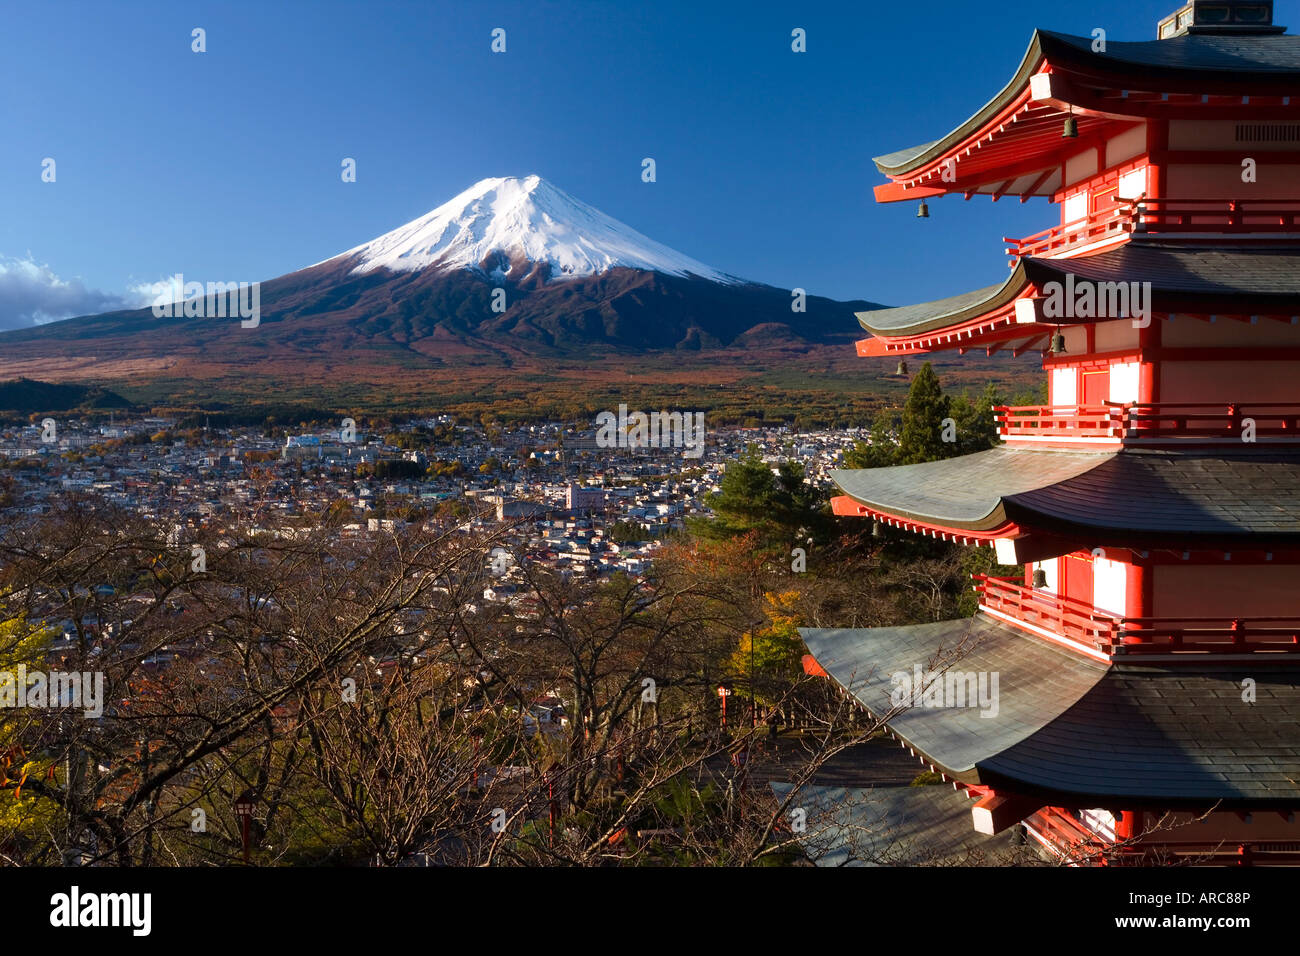 Mount Fuji begrenzt im Schnee und den oberen Ebenen des Tempels, Fuji-Hakone-Izu-Nationalpark, Chubu, zentralen Honshu, Japan, Asien Stockfoto